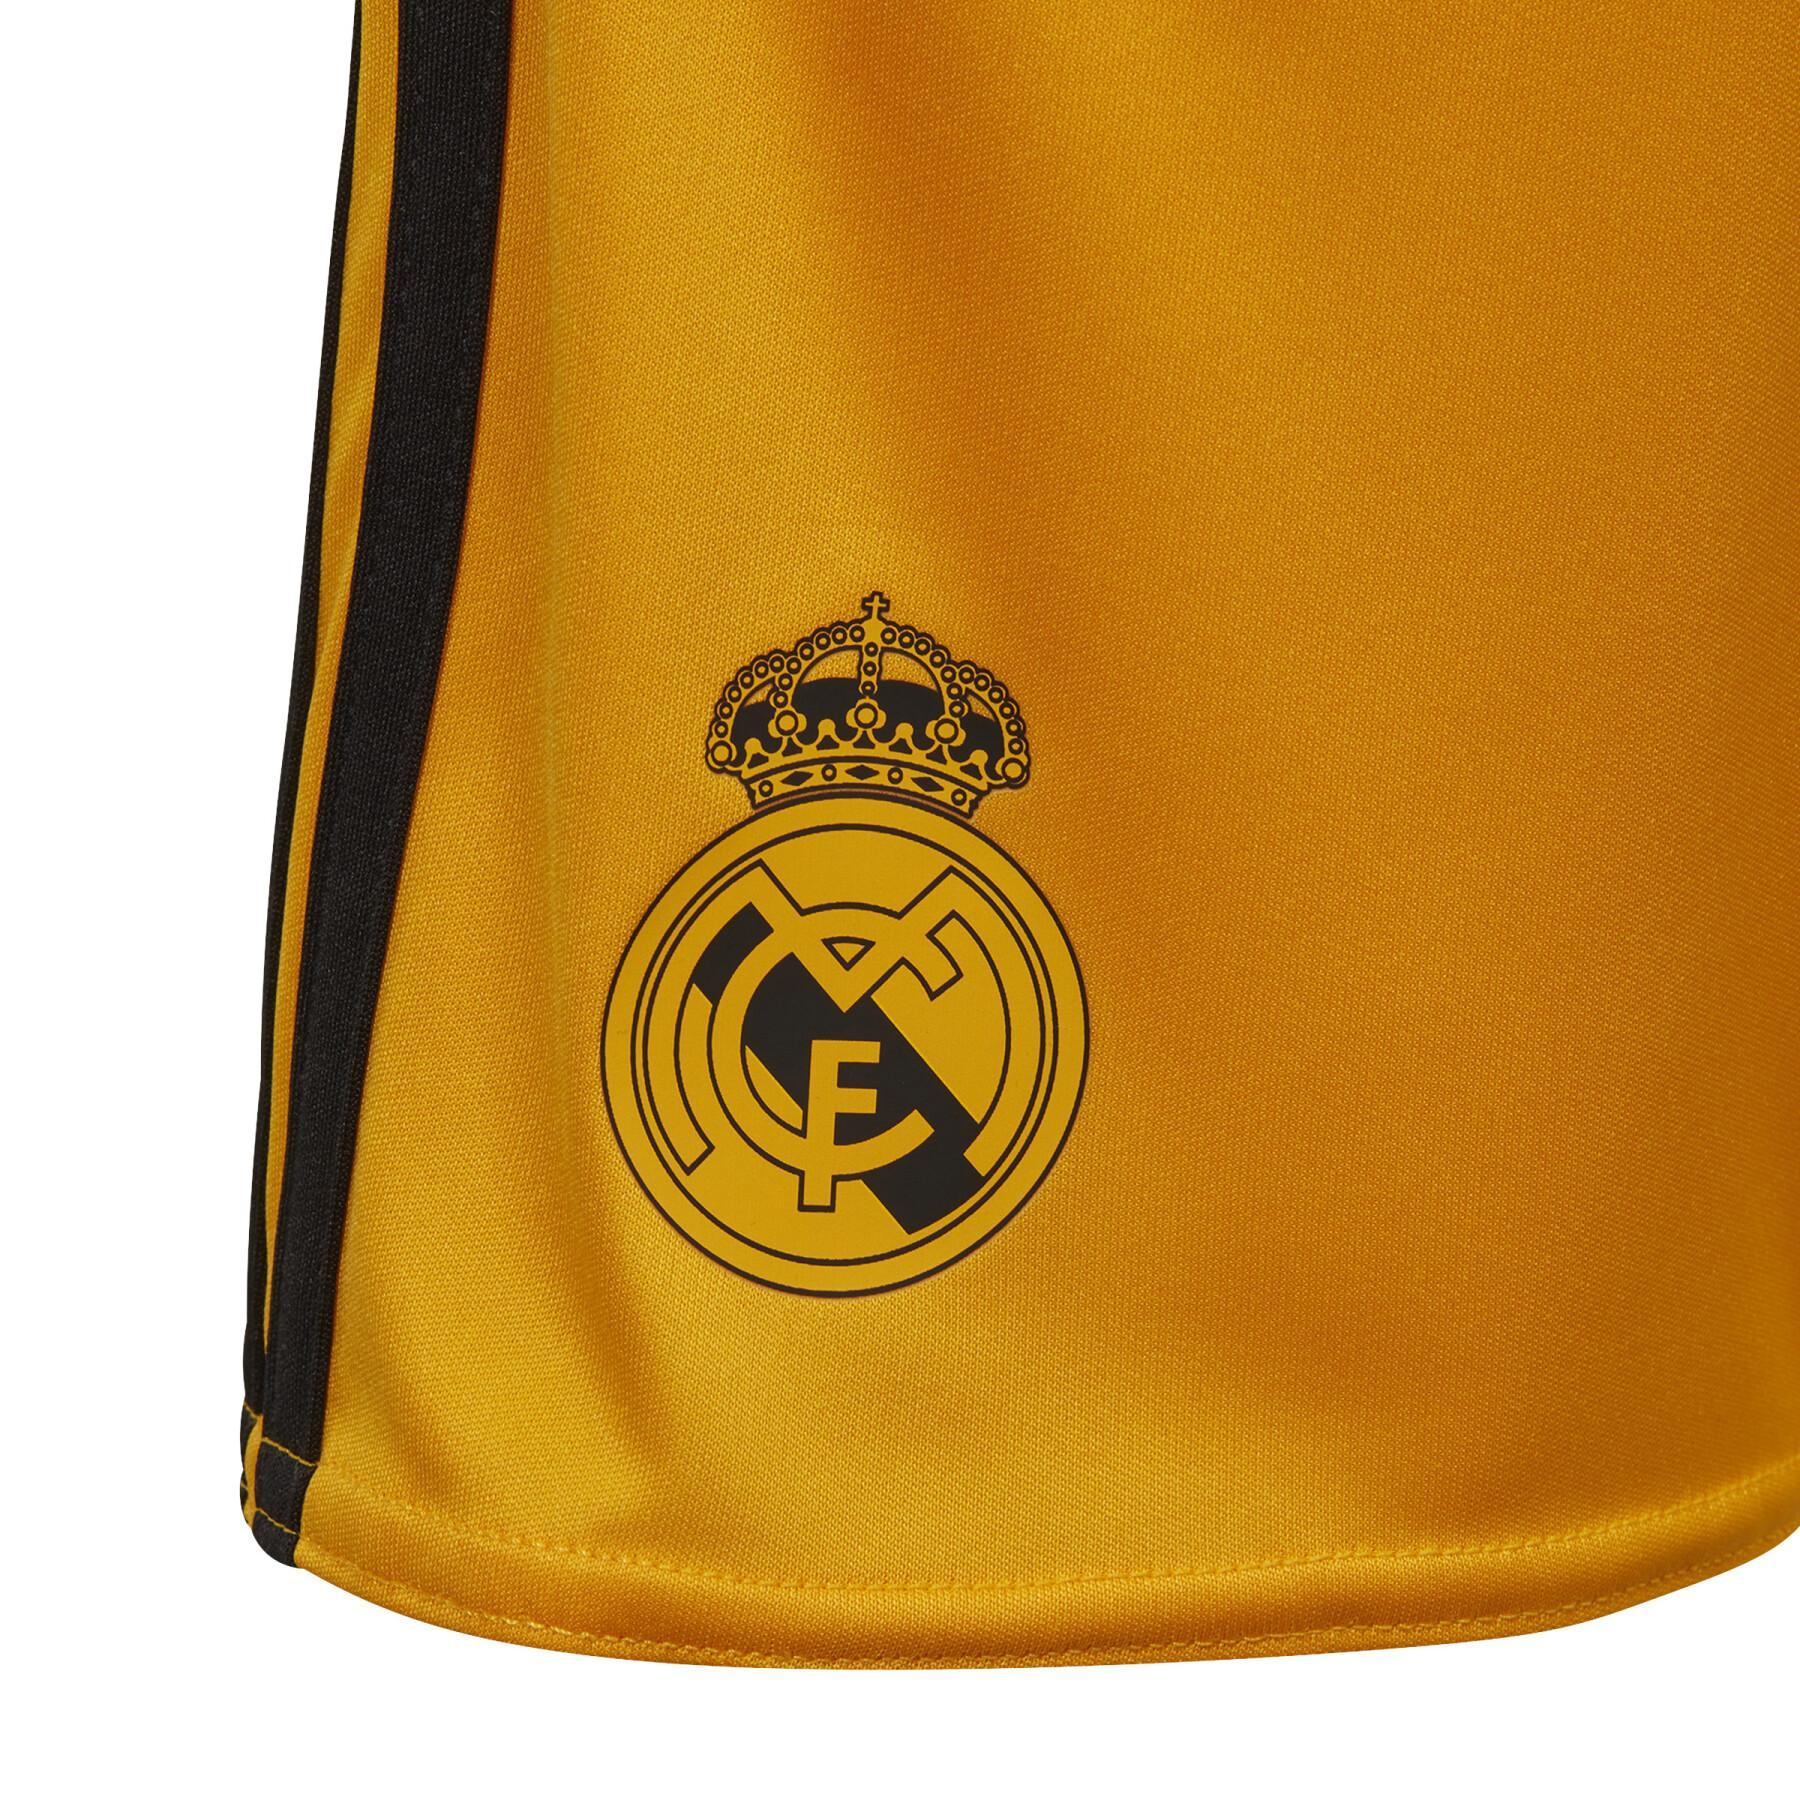 Mini home kit Real Madrid Goalkeeper 2019/20